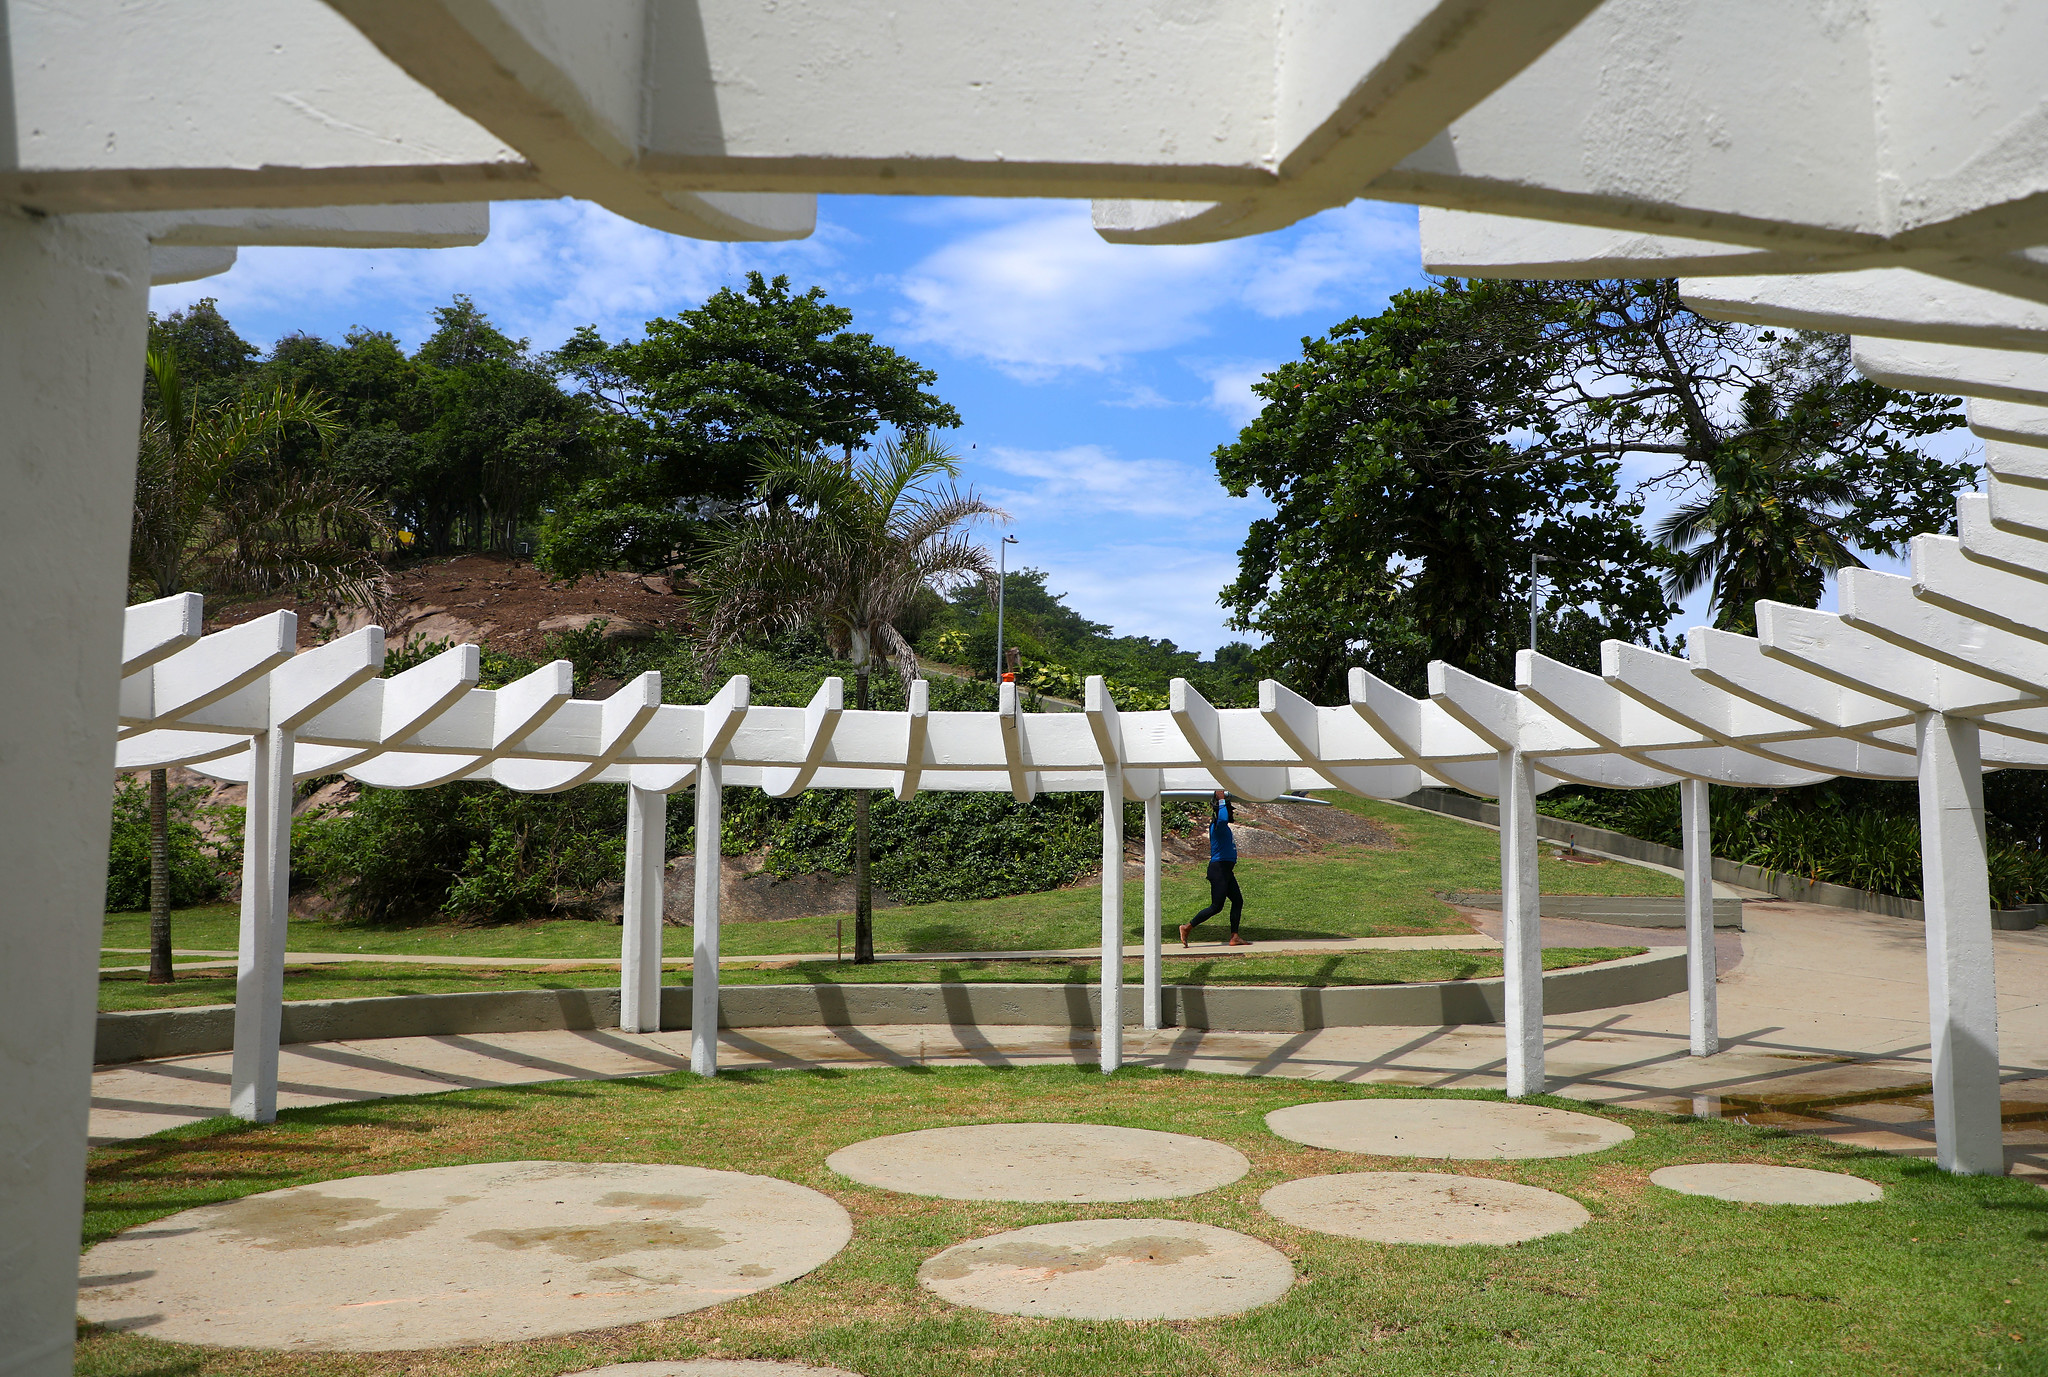 O Parque Garota de Ipanema revitalizado - Fabio Motta / Prefeitura do Rio